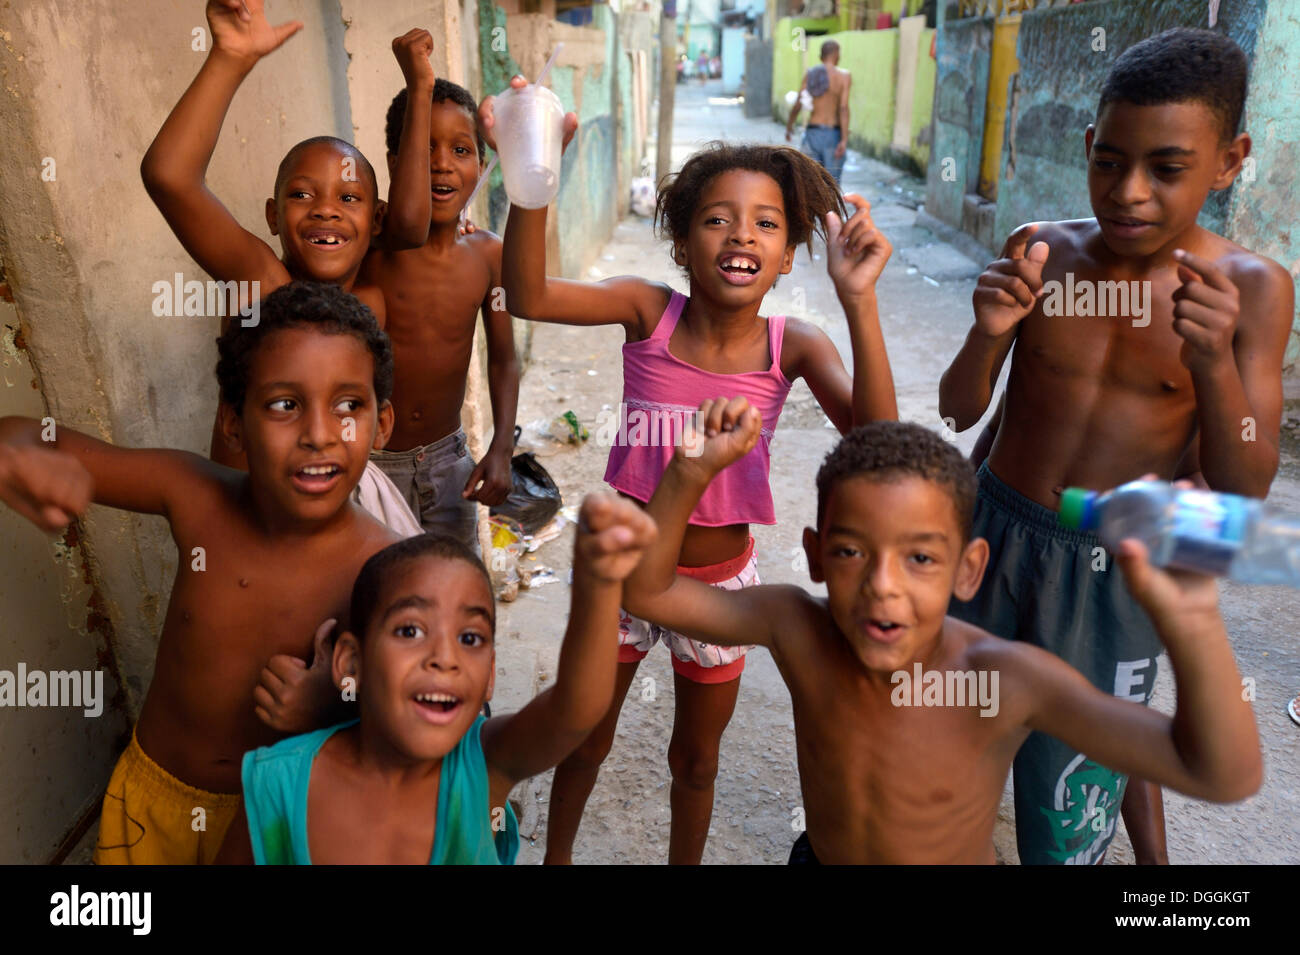 Children cheering happily in a slum or favela, Jacarezinho favela, Rio de Janeiro, Rio de Janeiro State, Brazil Stock Photo